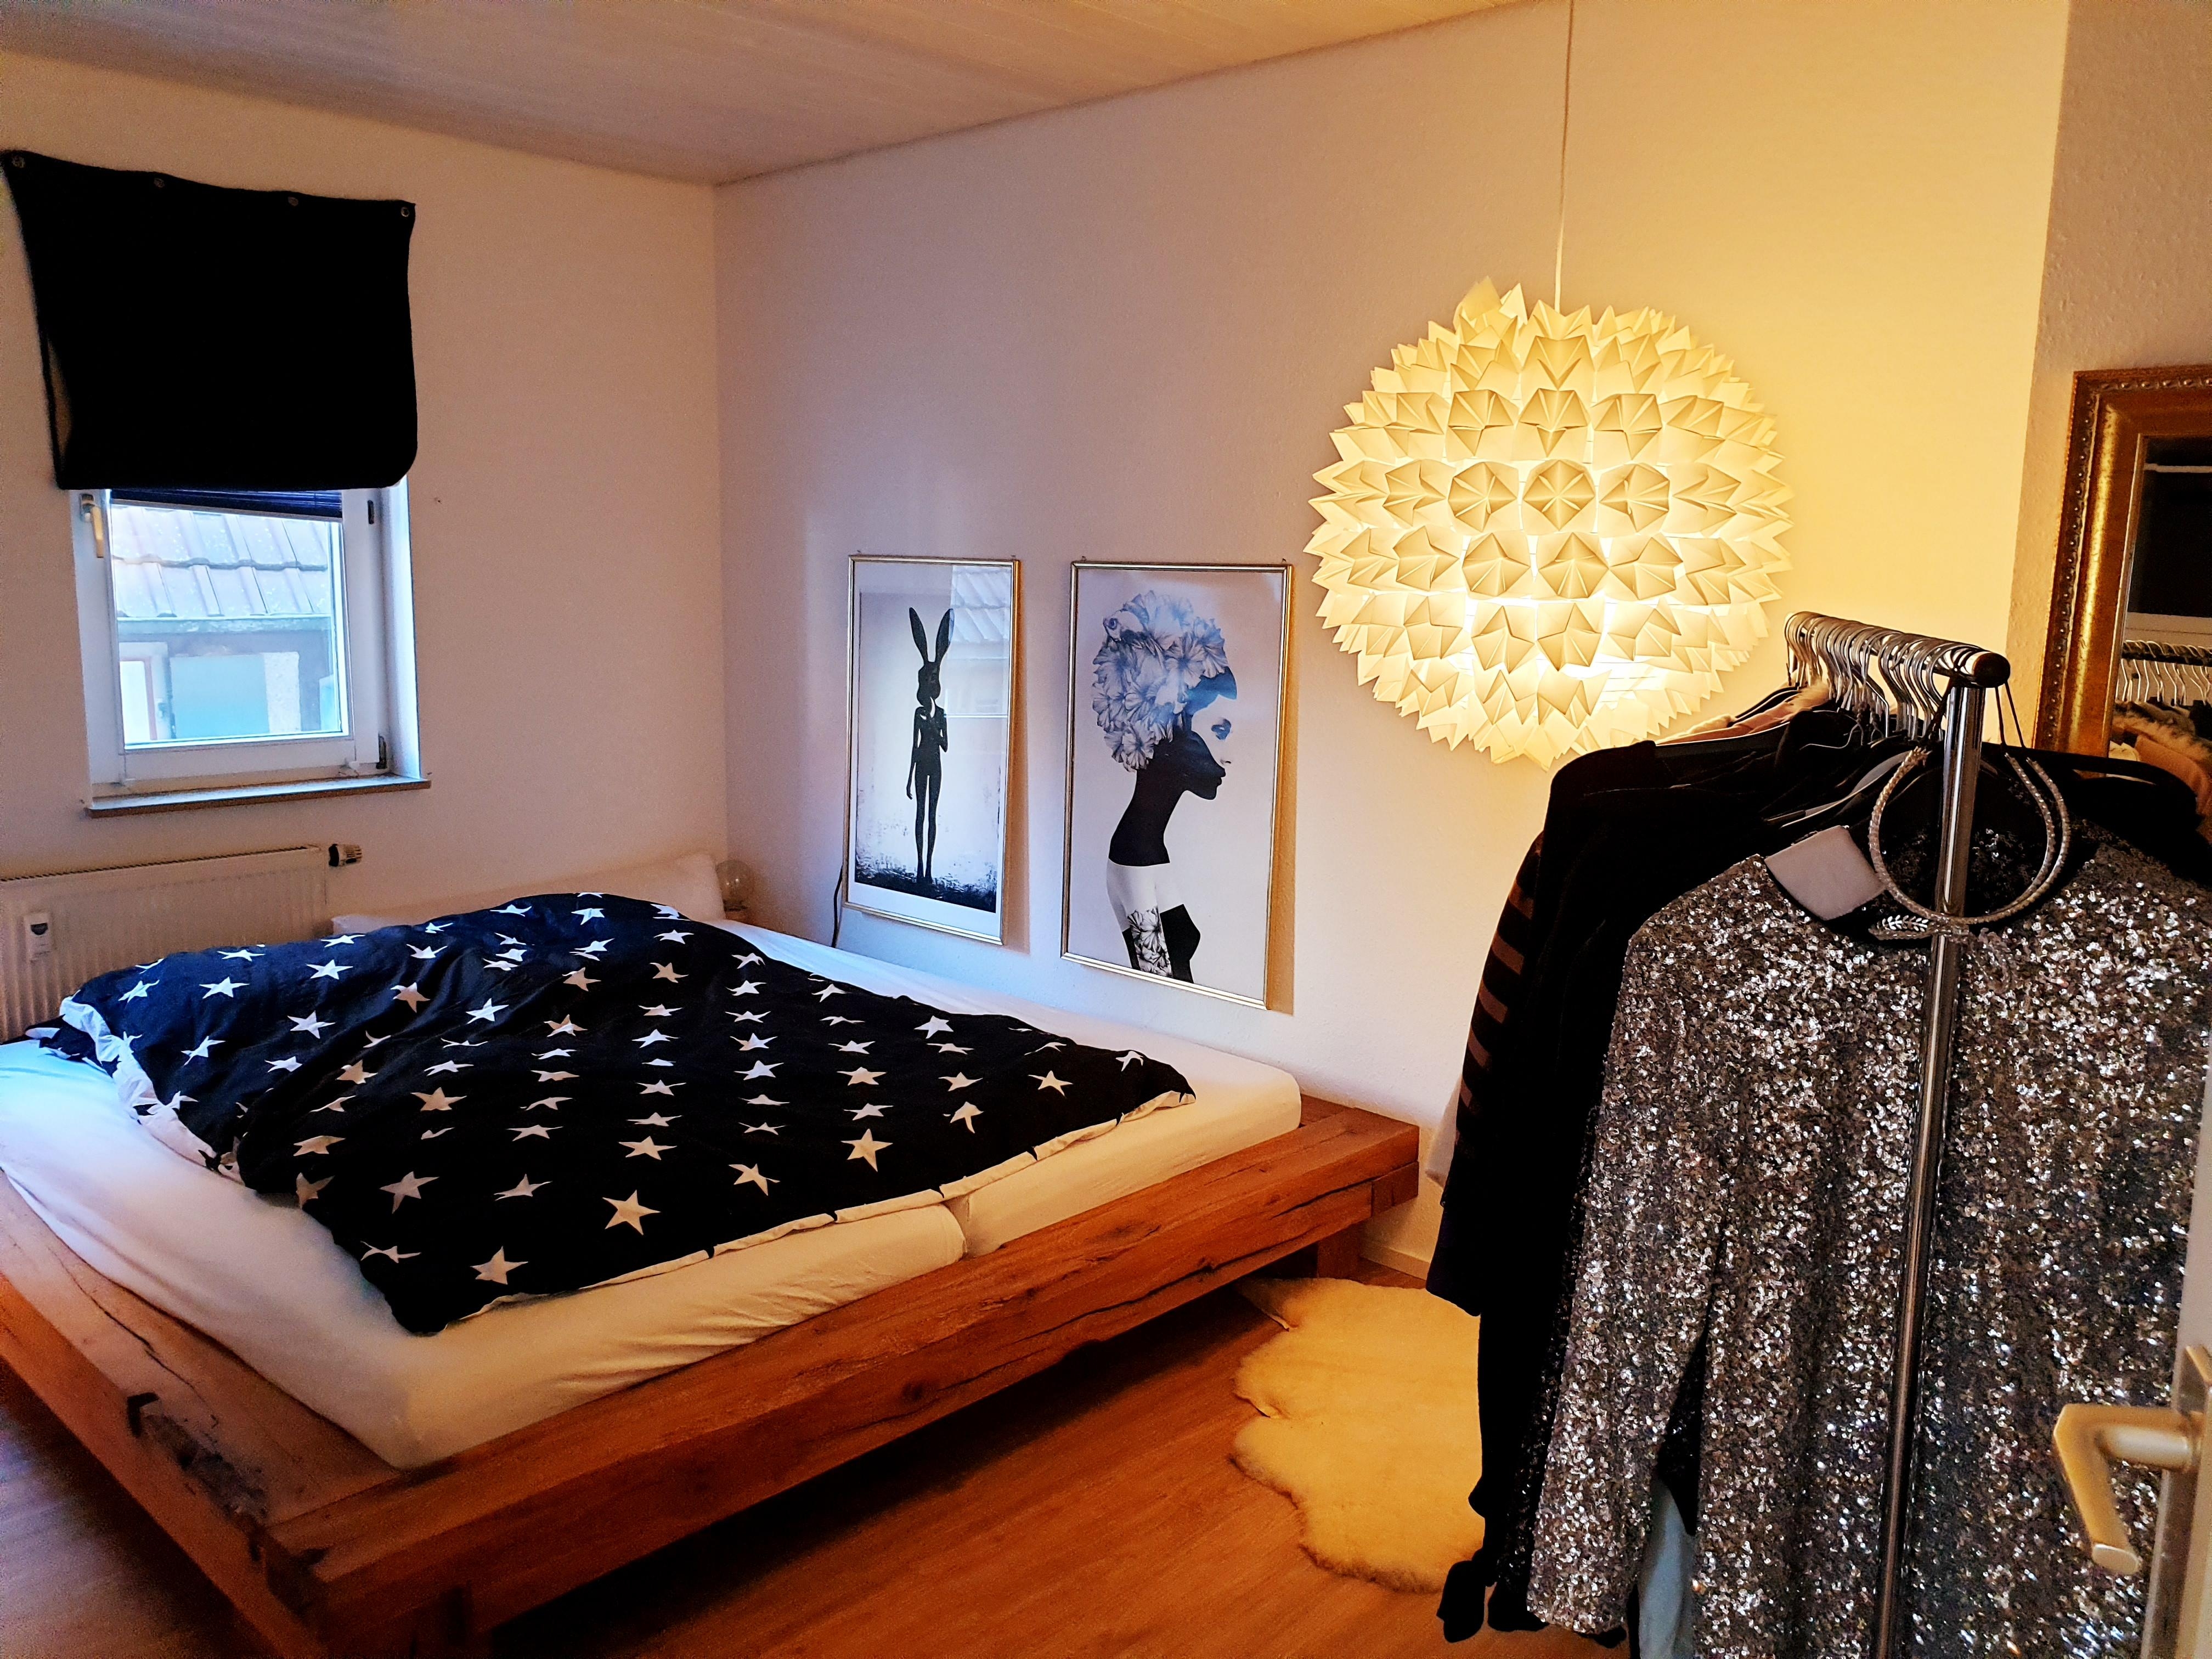 #schlafzimmer #schwarzweiß #lampe #diy #gold #kunst #bett #eiche #eichenbalken #nachher